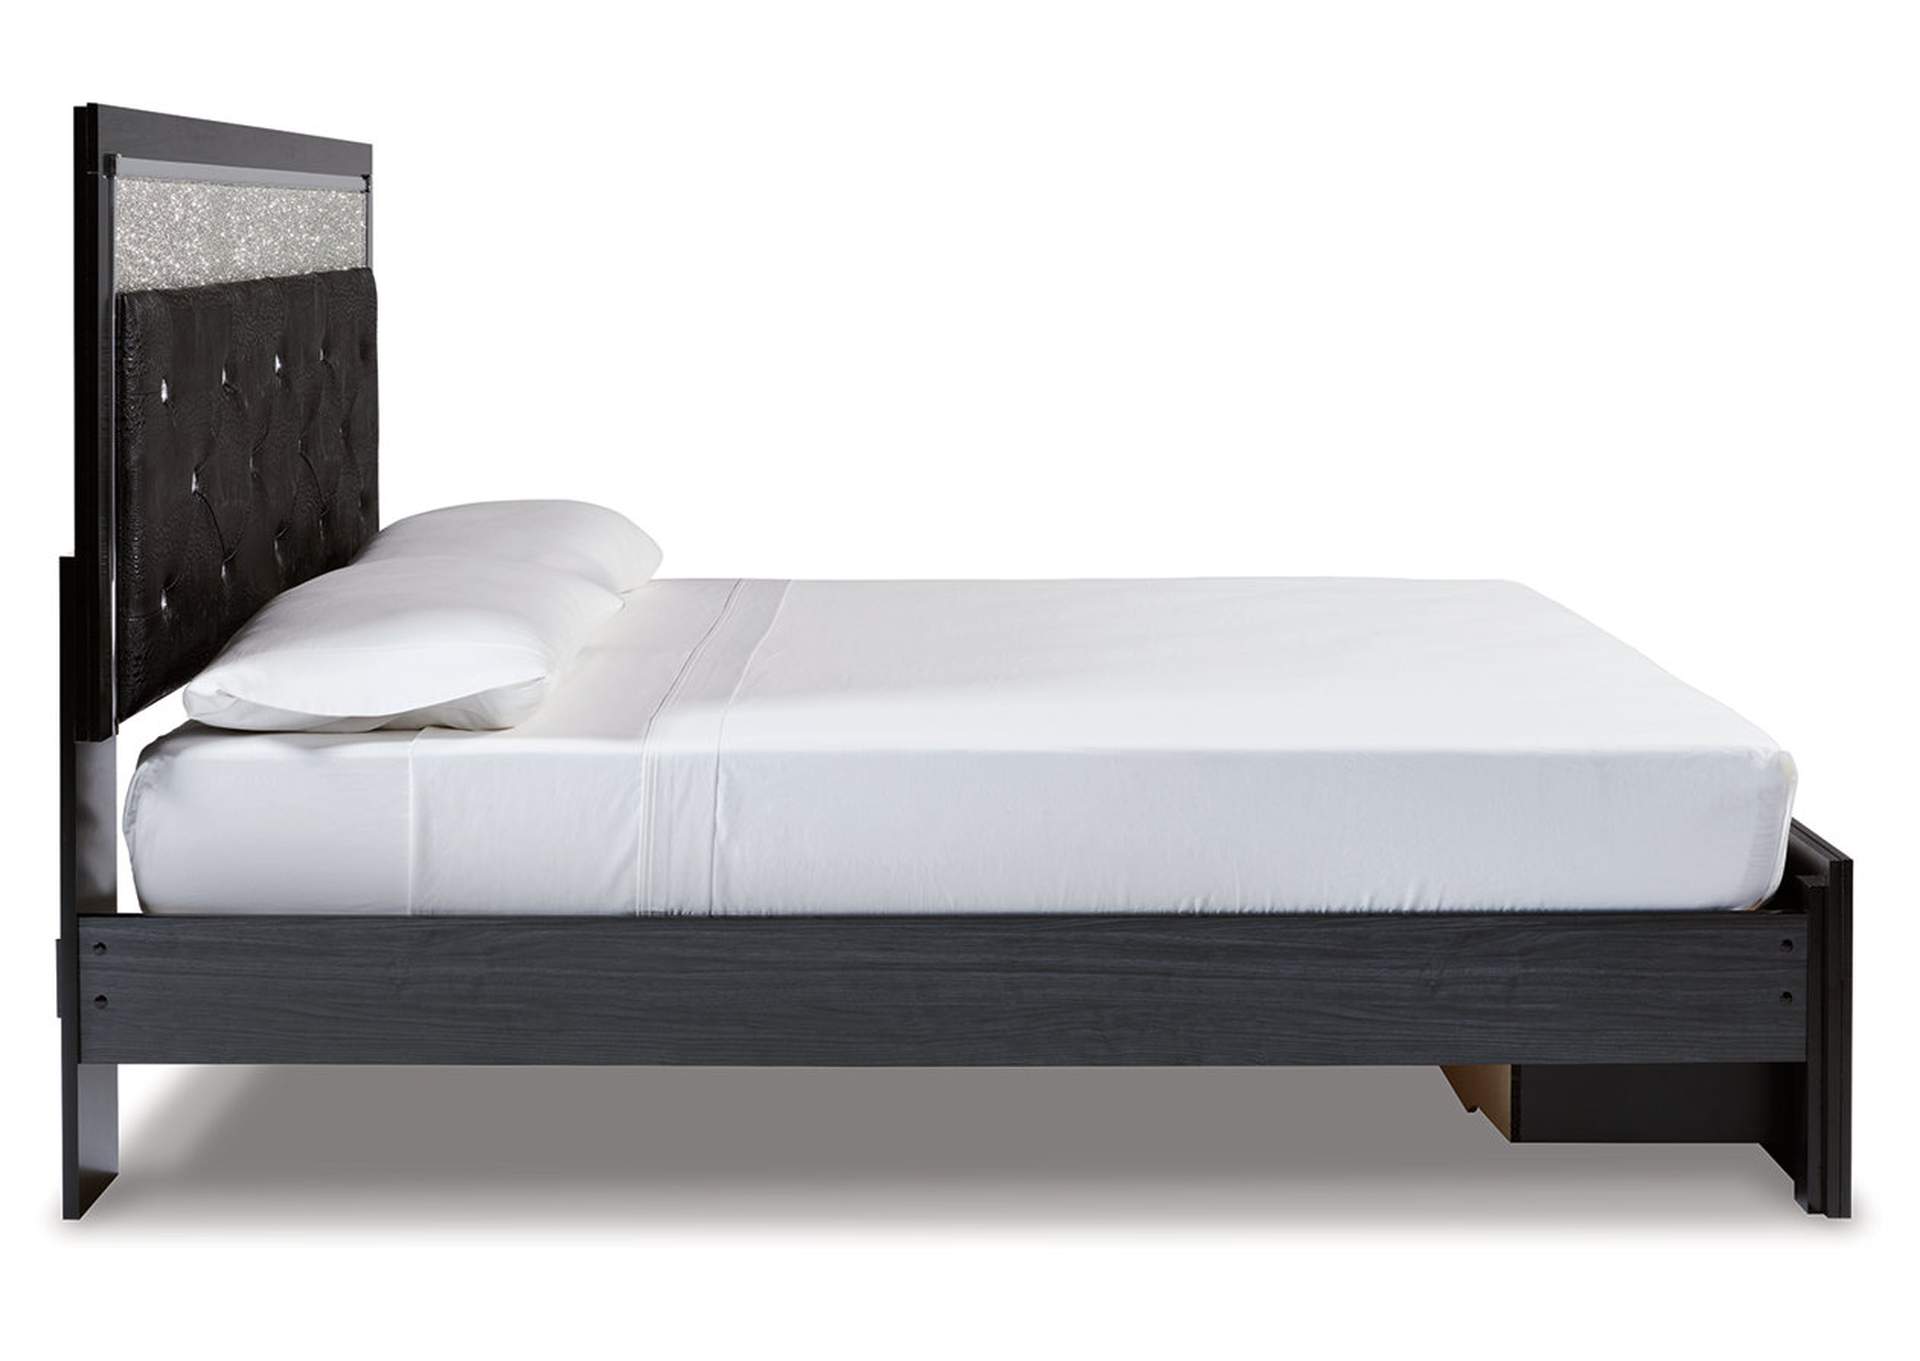 Kaydell King Upholstered Panel Storage Platform Bed,Signature Design By Ashley